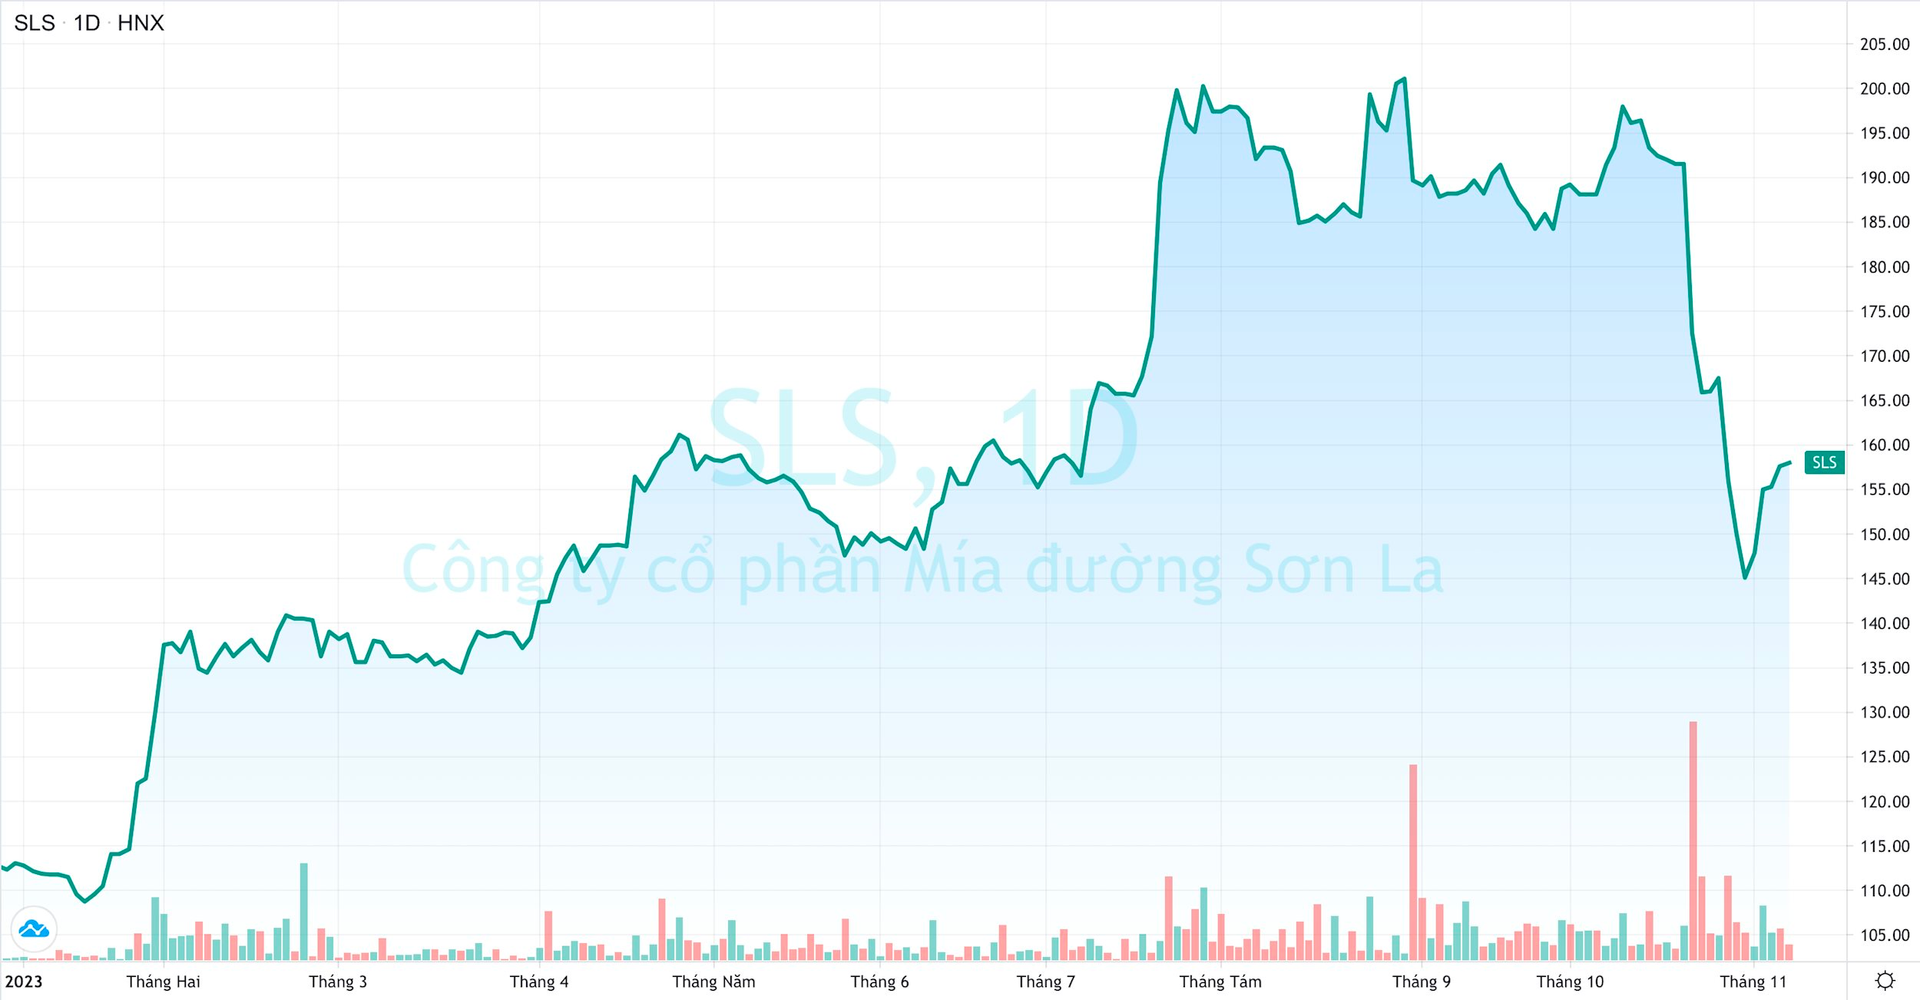 Lợi nhuận lớn, cổ tức khủng, vì sao cổ phiếu Mía đường Sơn La (SLS) vẫn giảm mạnh?  - Ảnh 1.